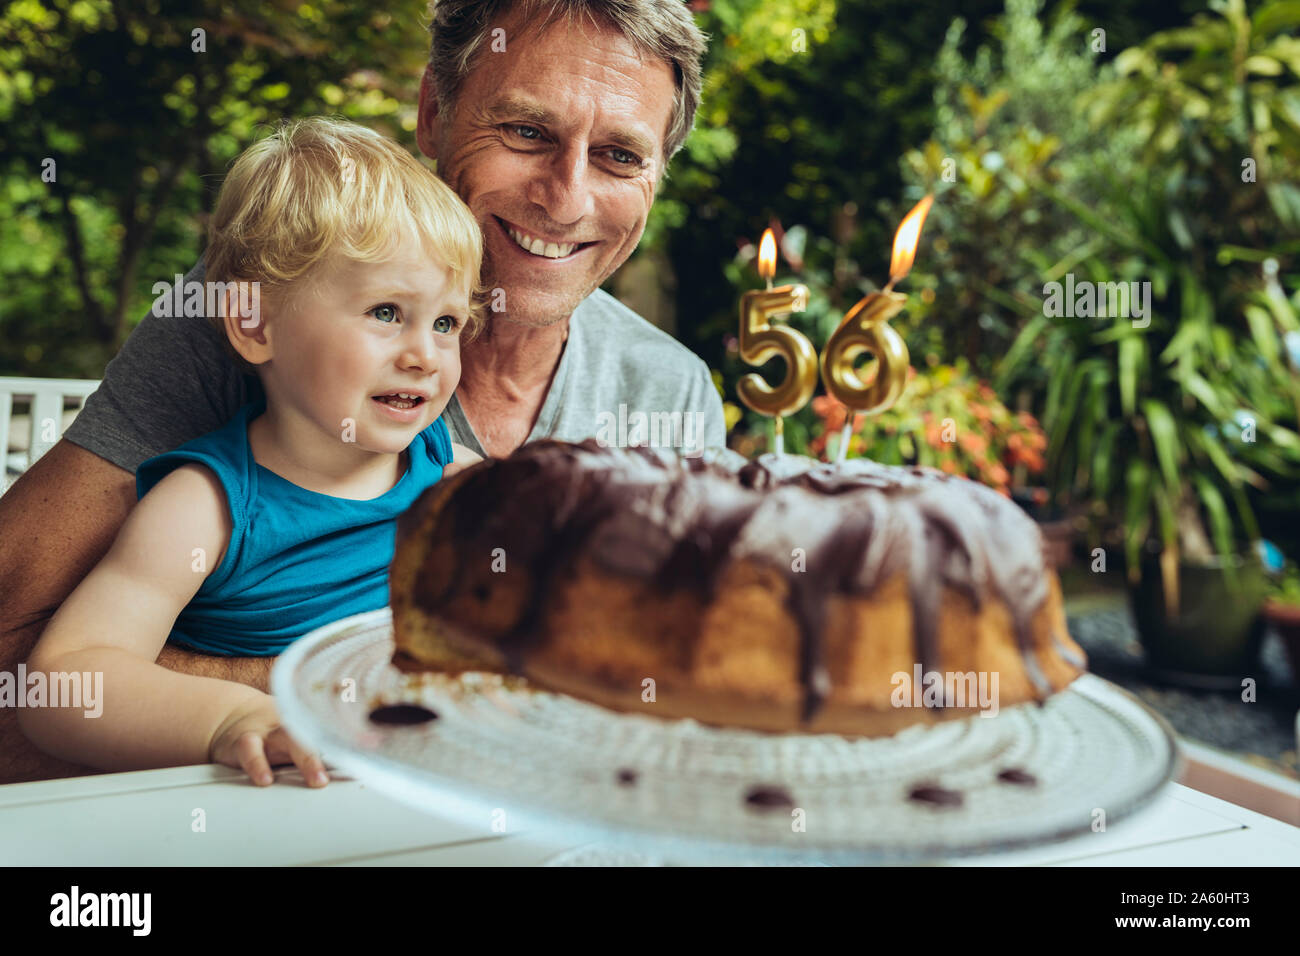 Chico sentado en el regazo del padre, celebrando su cumpleaños Foto de stock